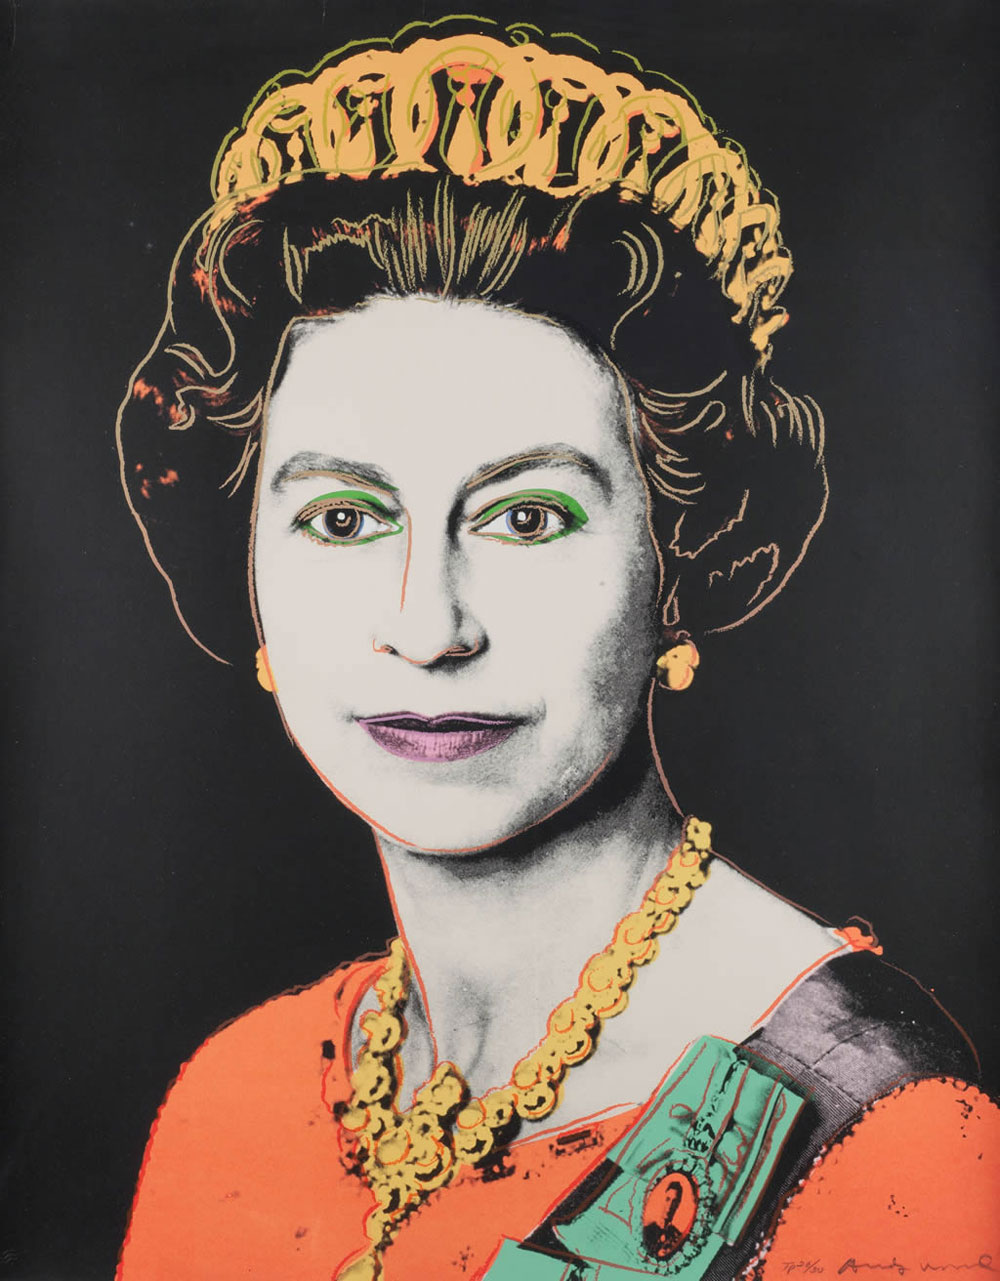 Andy-Warhols-1985-portrait-of-Queen-Elizabeth-II.jpg